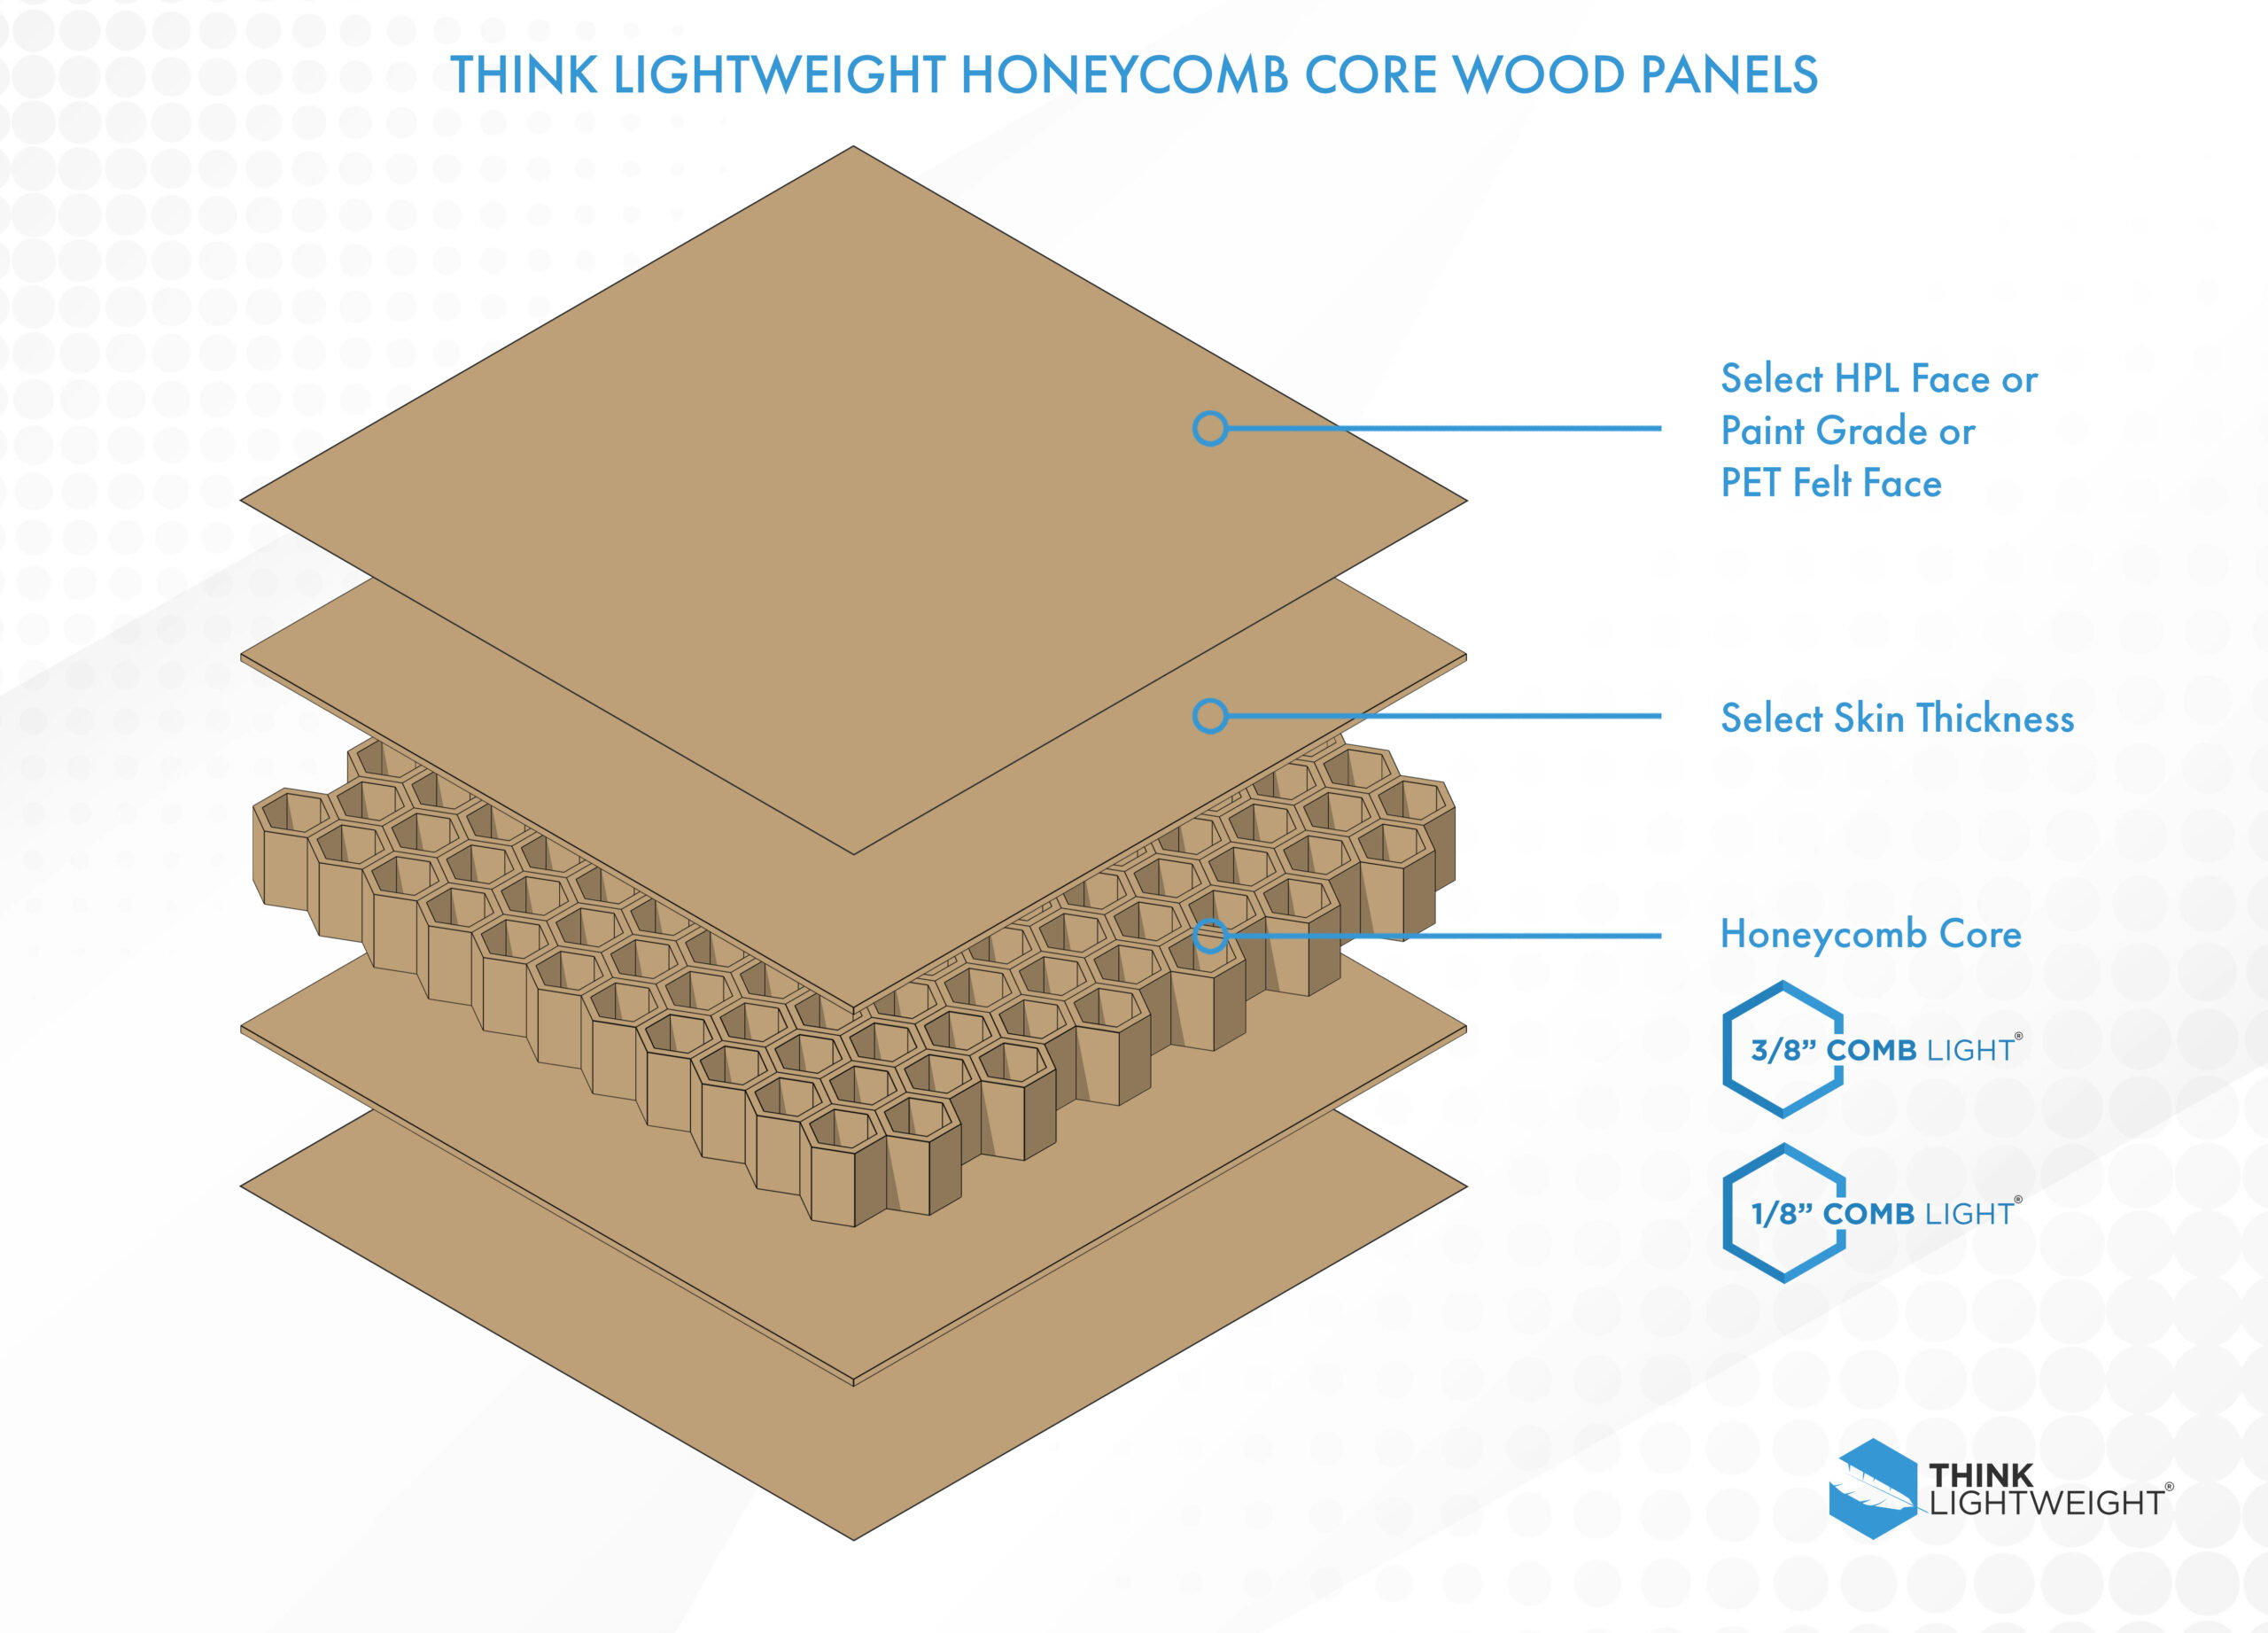 Honeycomb Core Panels Honeycomb Core Wood Panels Lightweight Panels Lightweight Wood Panels Think Lightweight Honeycomb Panels